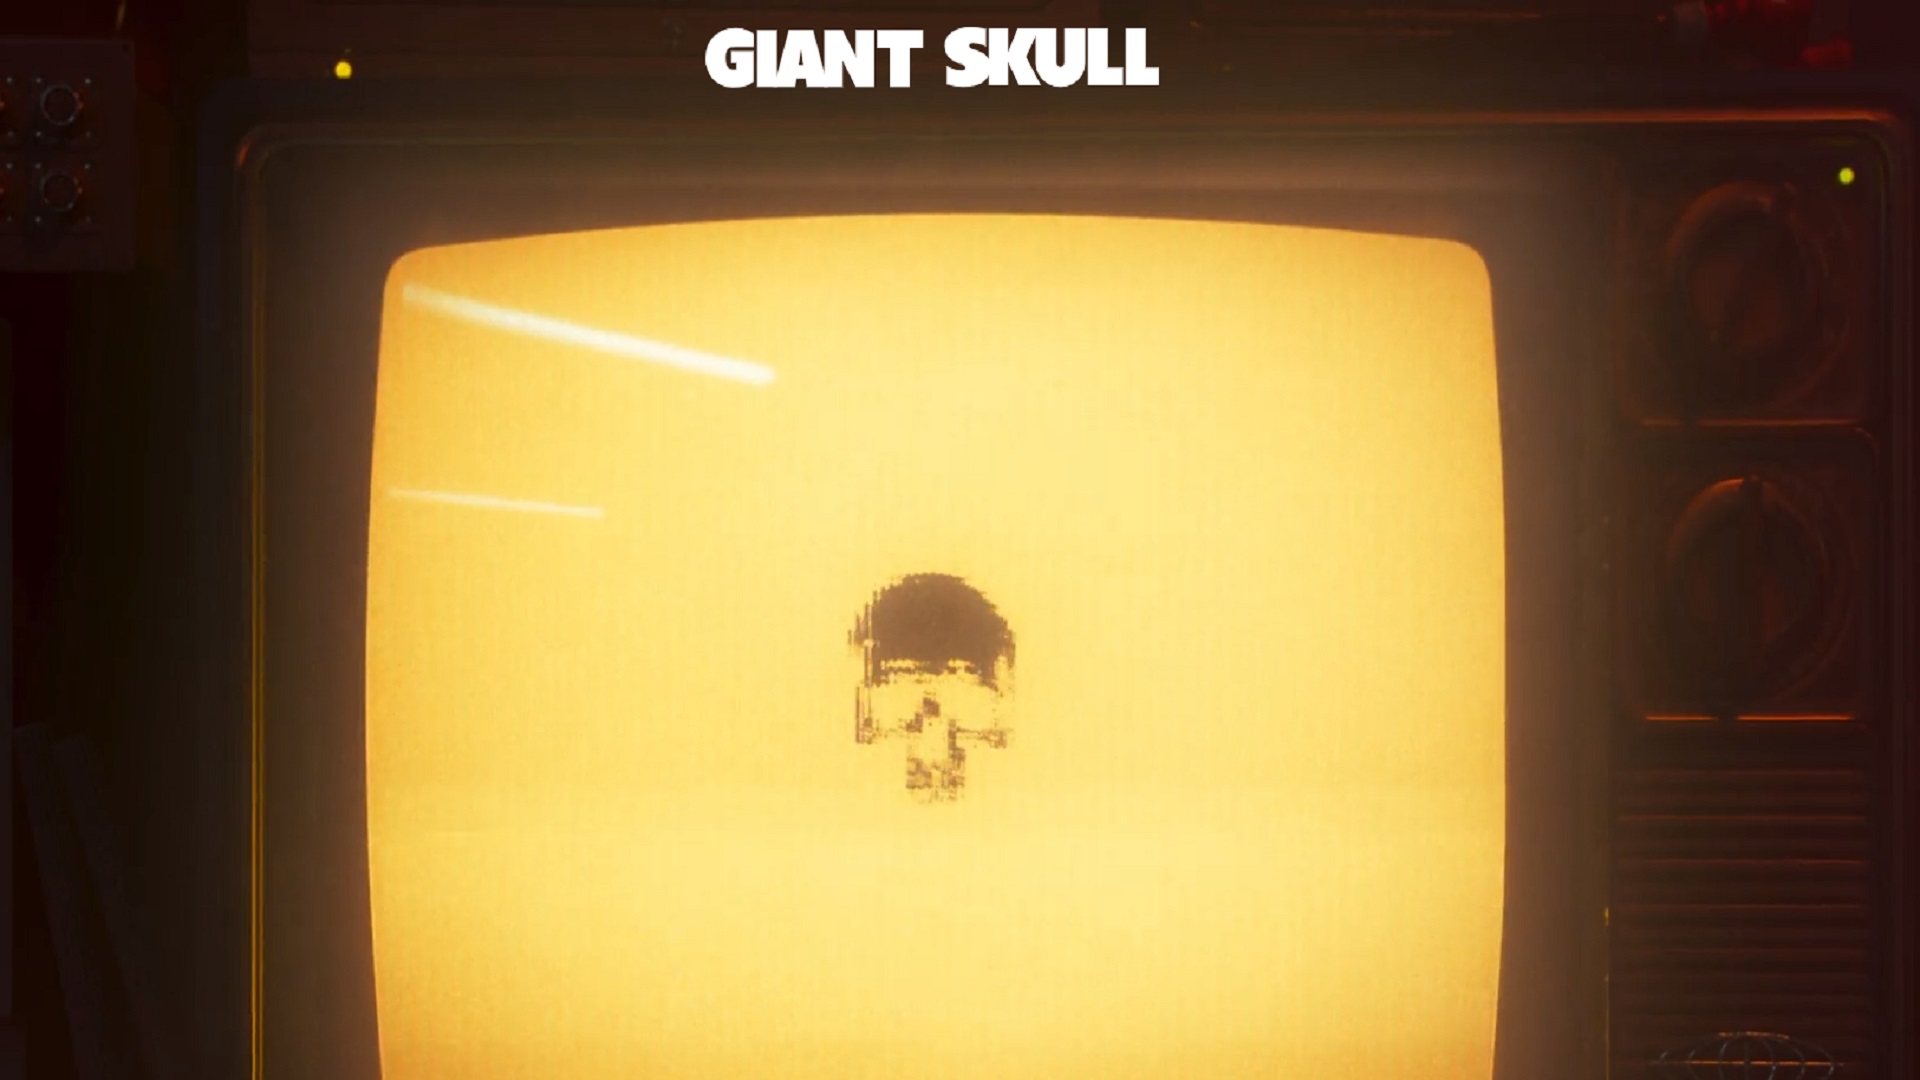 Giant Skull -sivusto